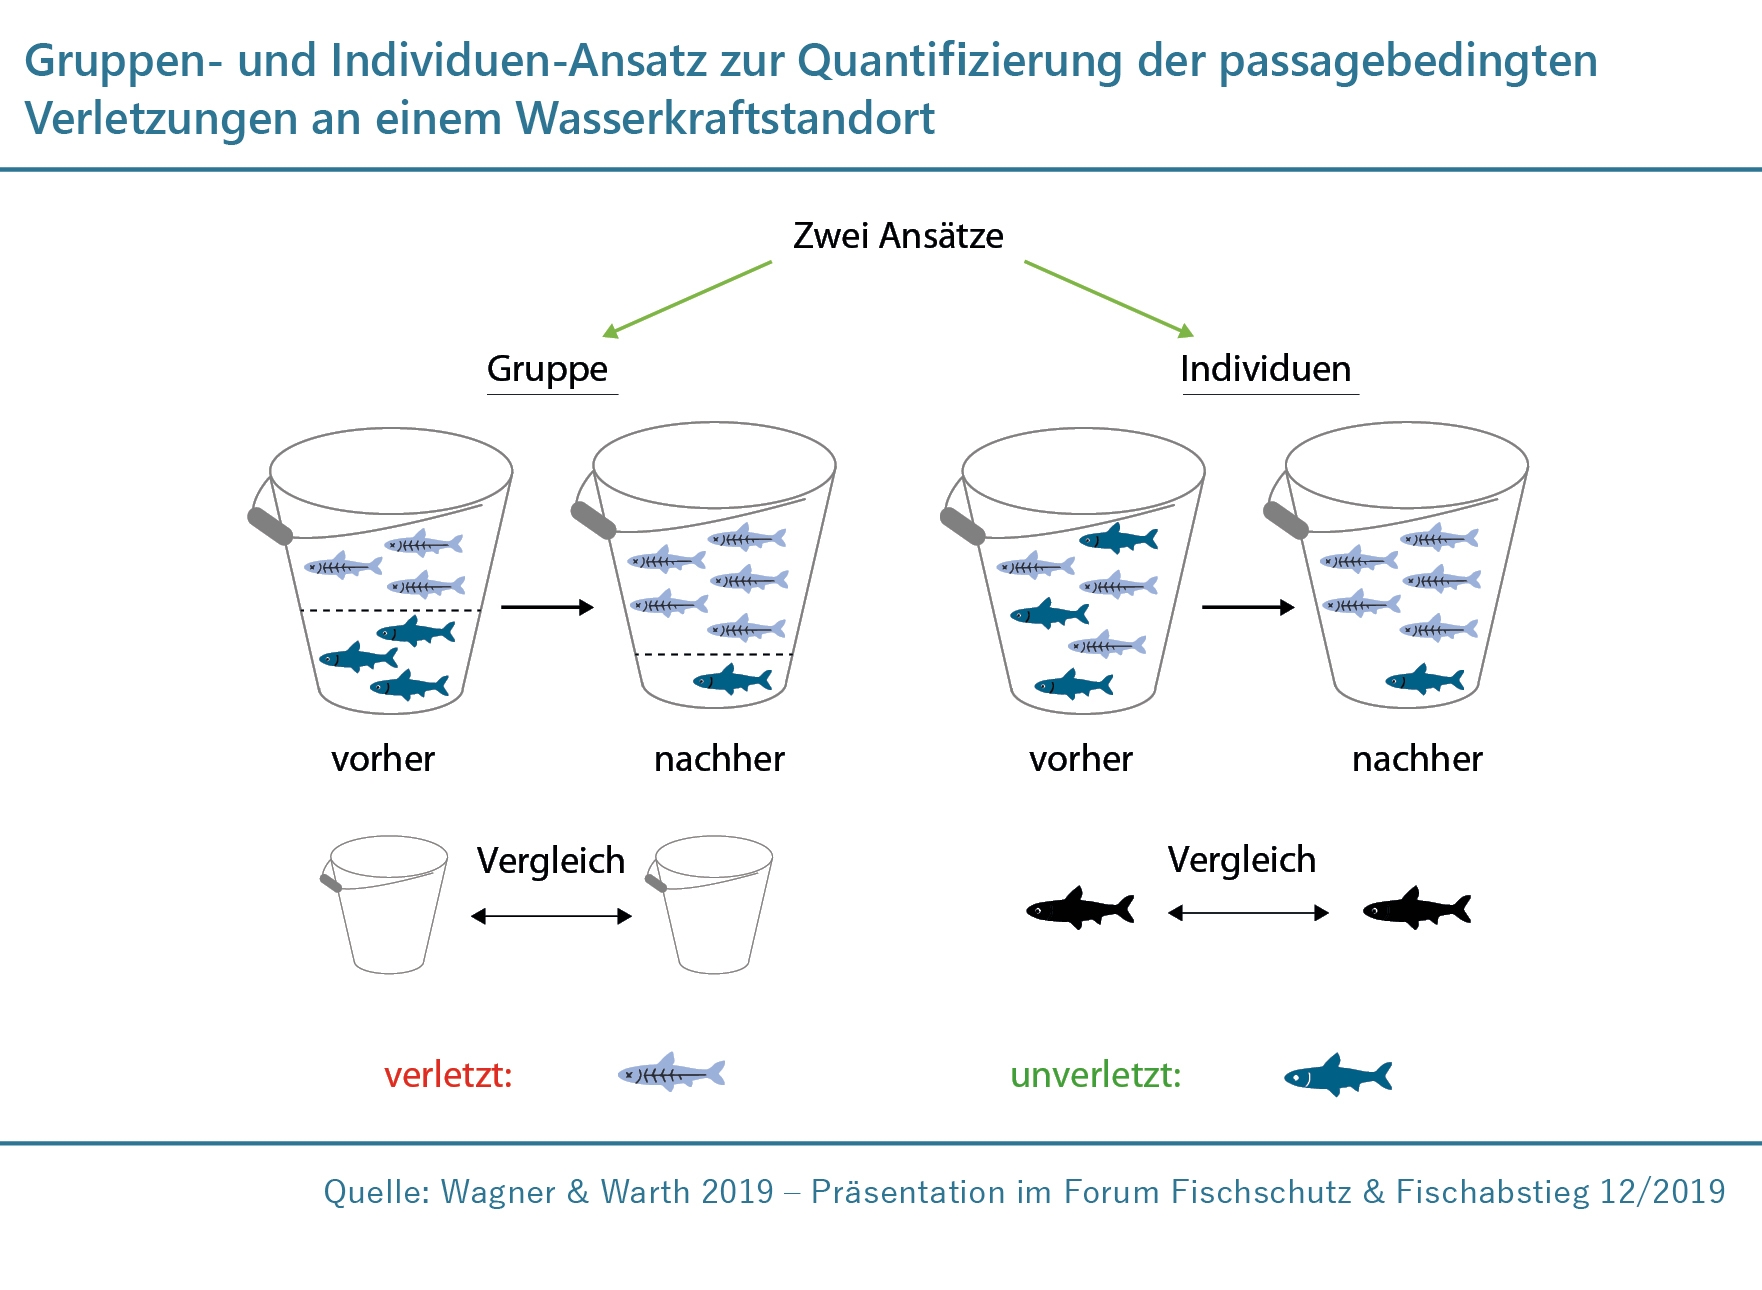 Infografik zum Gruppen- und Individuen-Ansatz zur Quantifizierung der Passagebedingten Verletzungen an einem Wasserkraftstandort